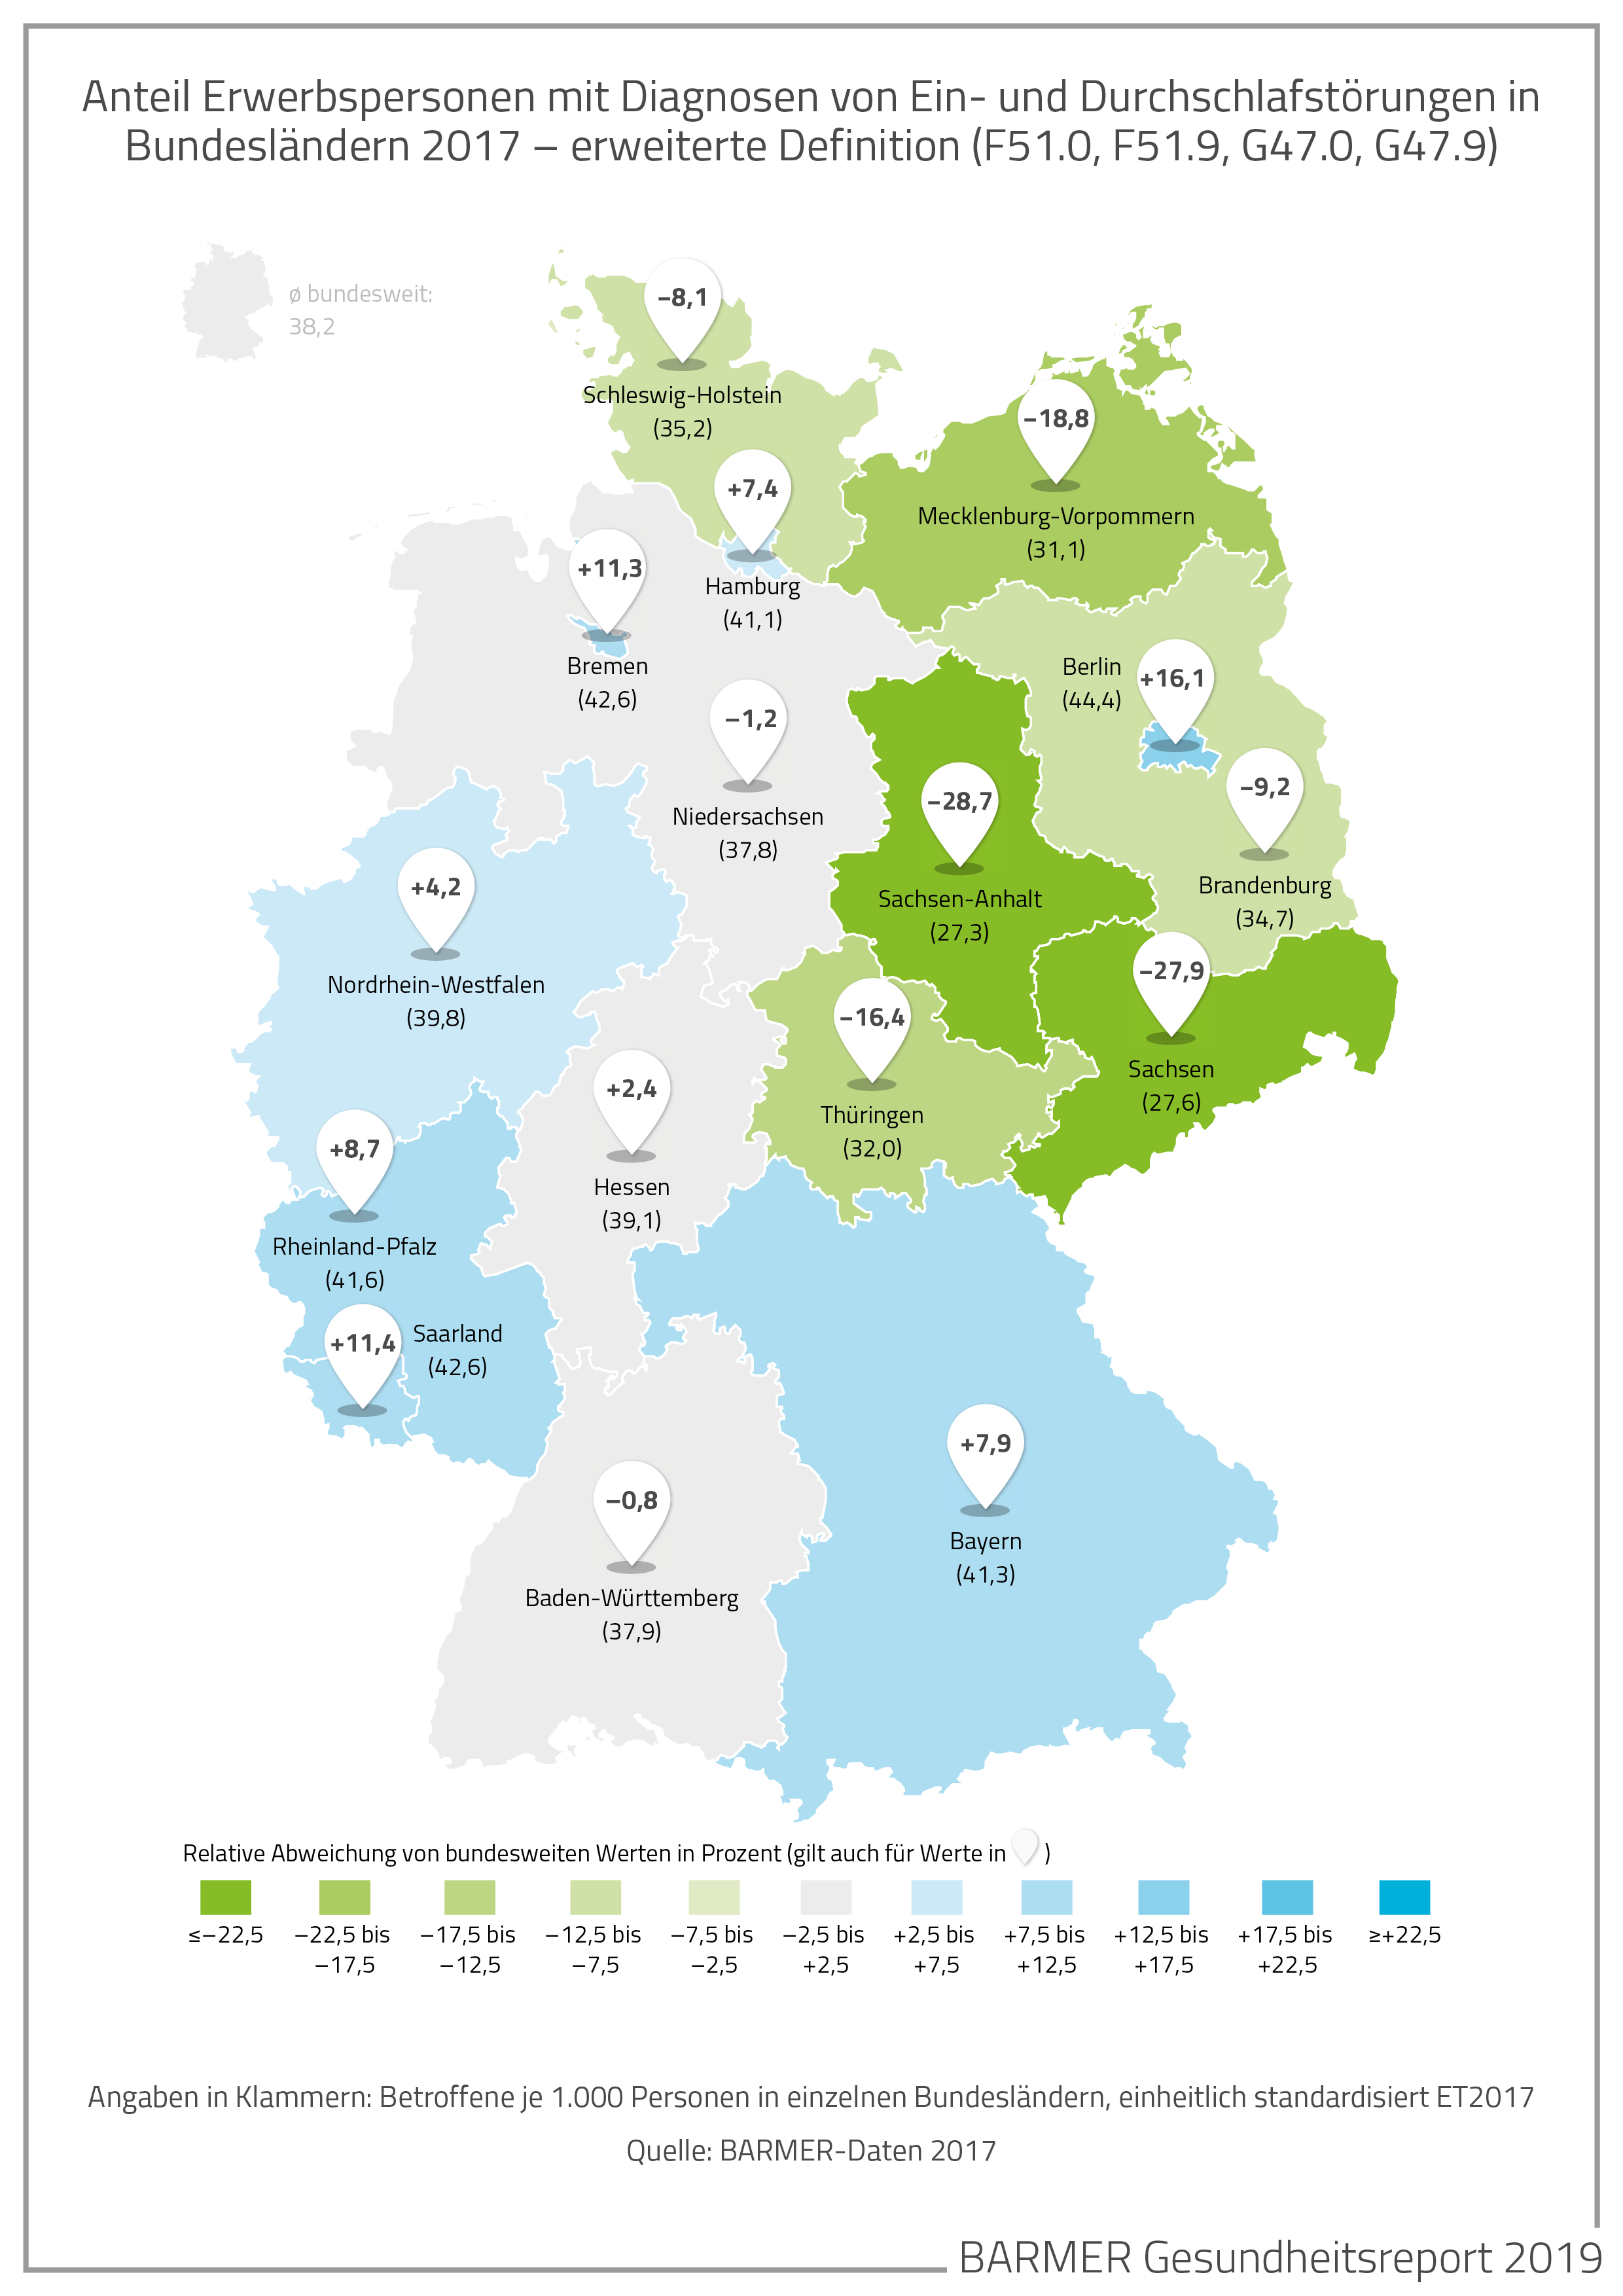 landkartenartige Darstellung des Anteils von Erwerbspersonen mit Diagnose von Ein-und Durchschlafstörungen in Bundesländern 2017